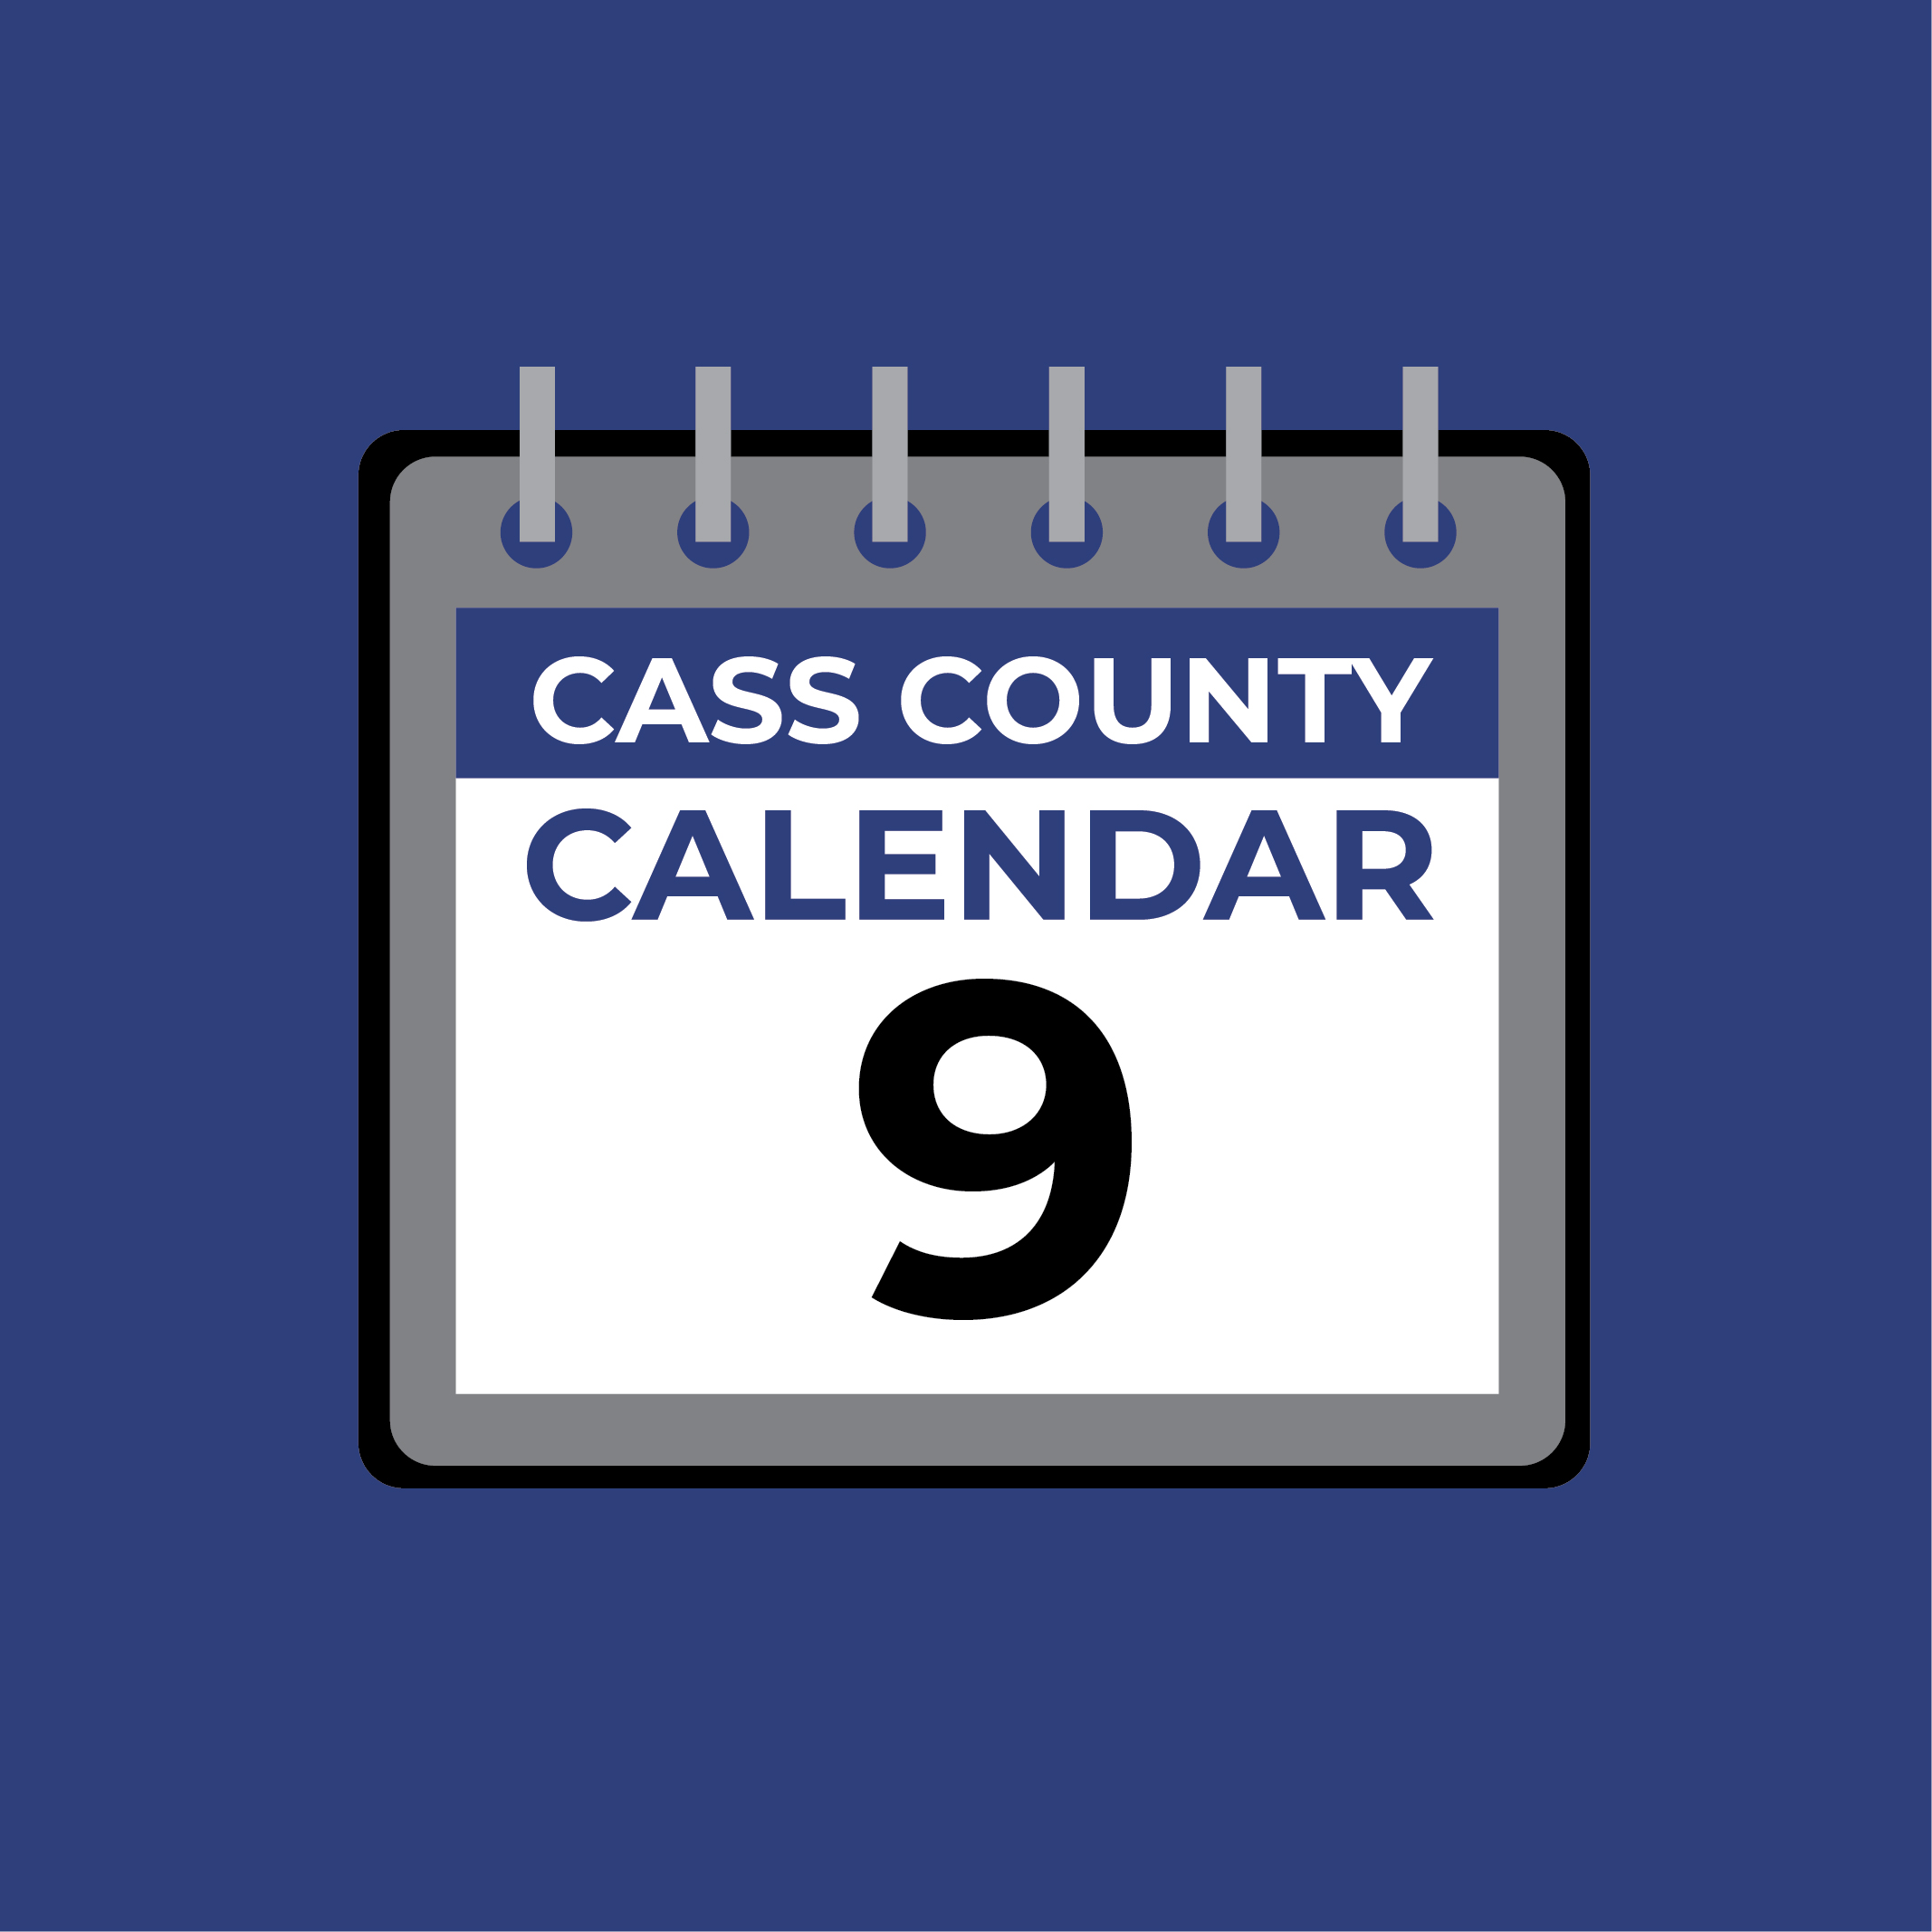 Cass County Calendar